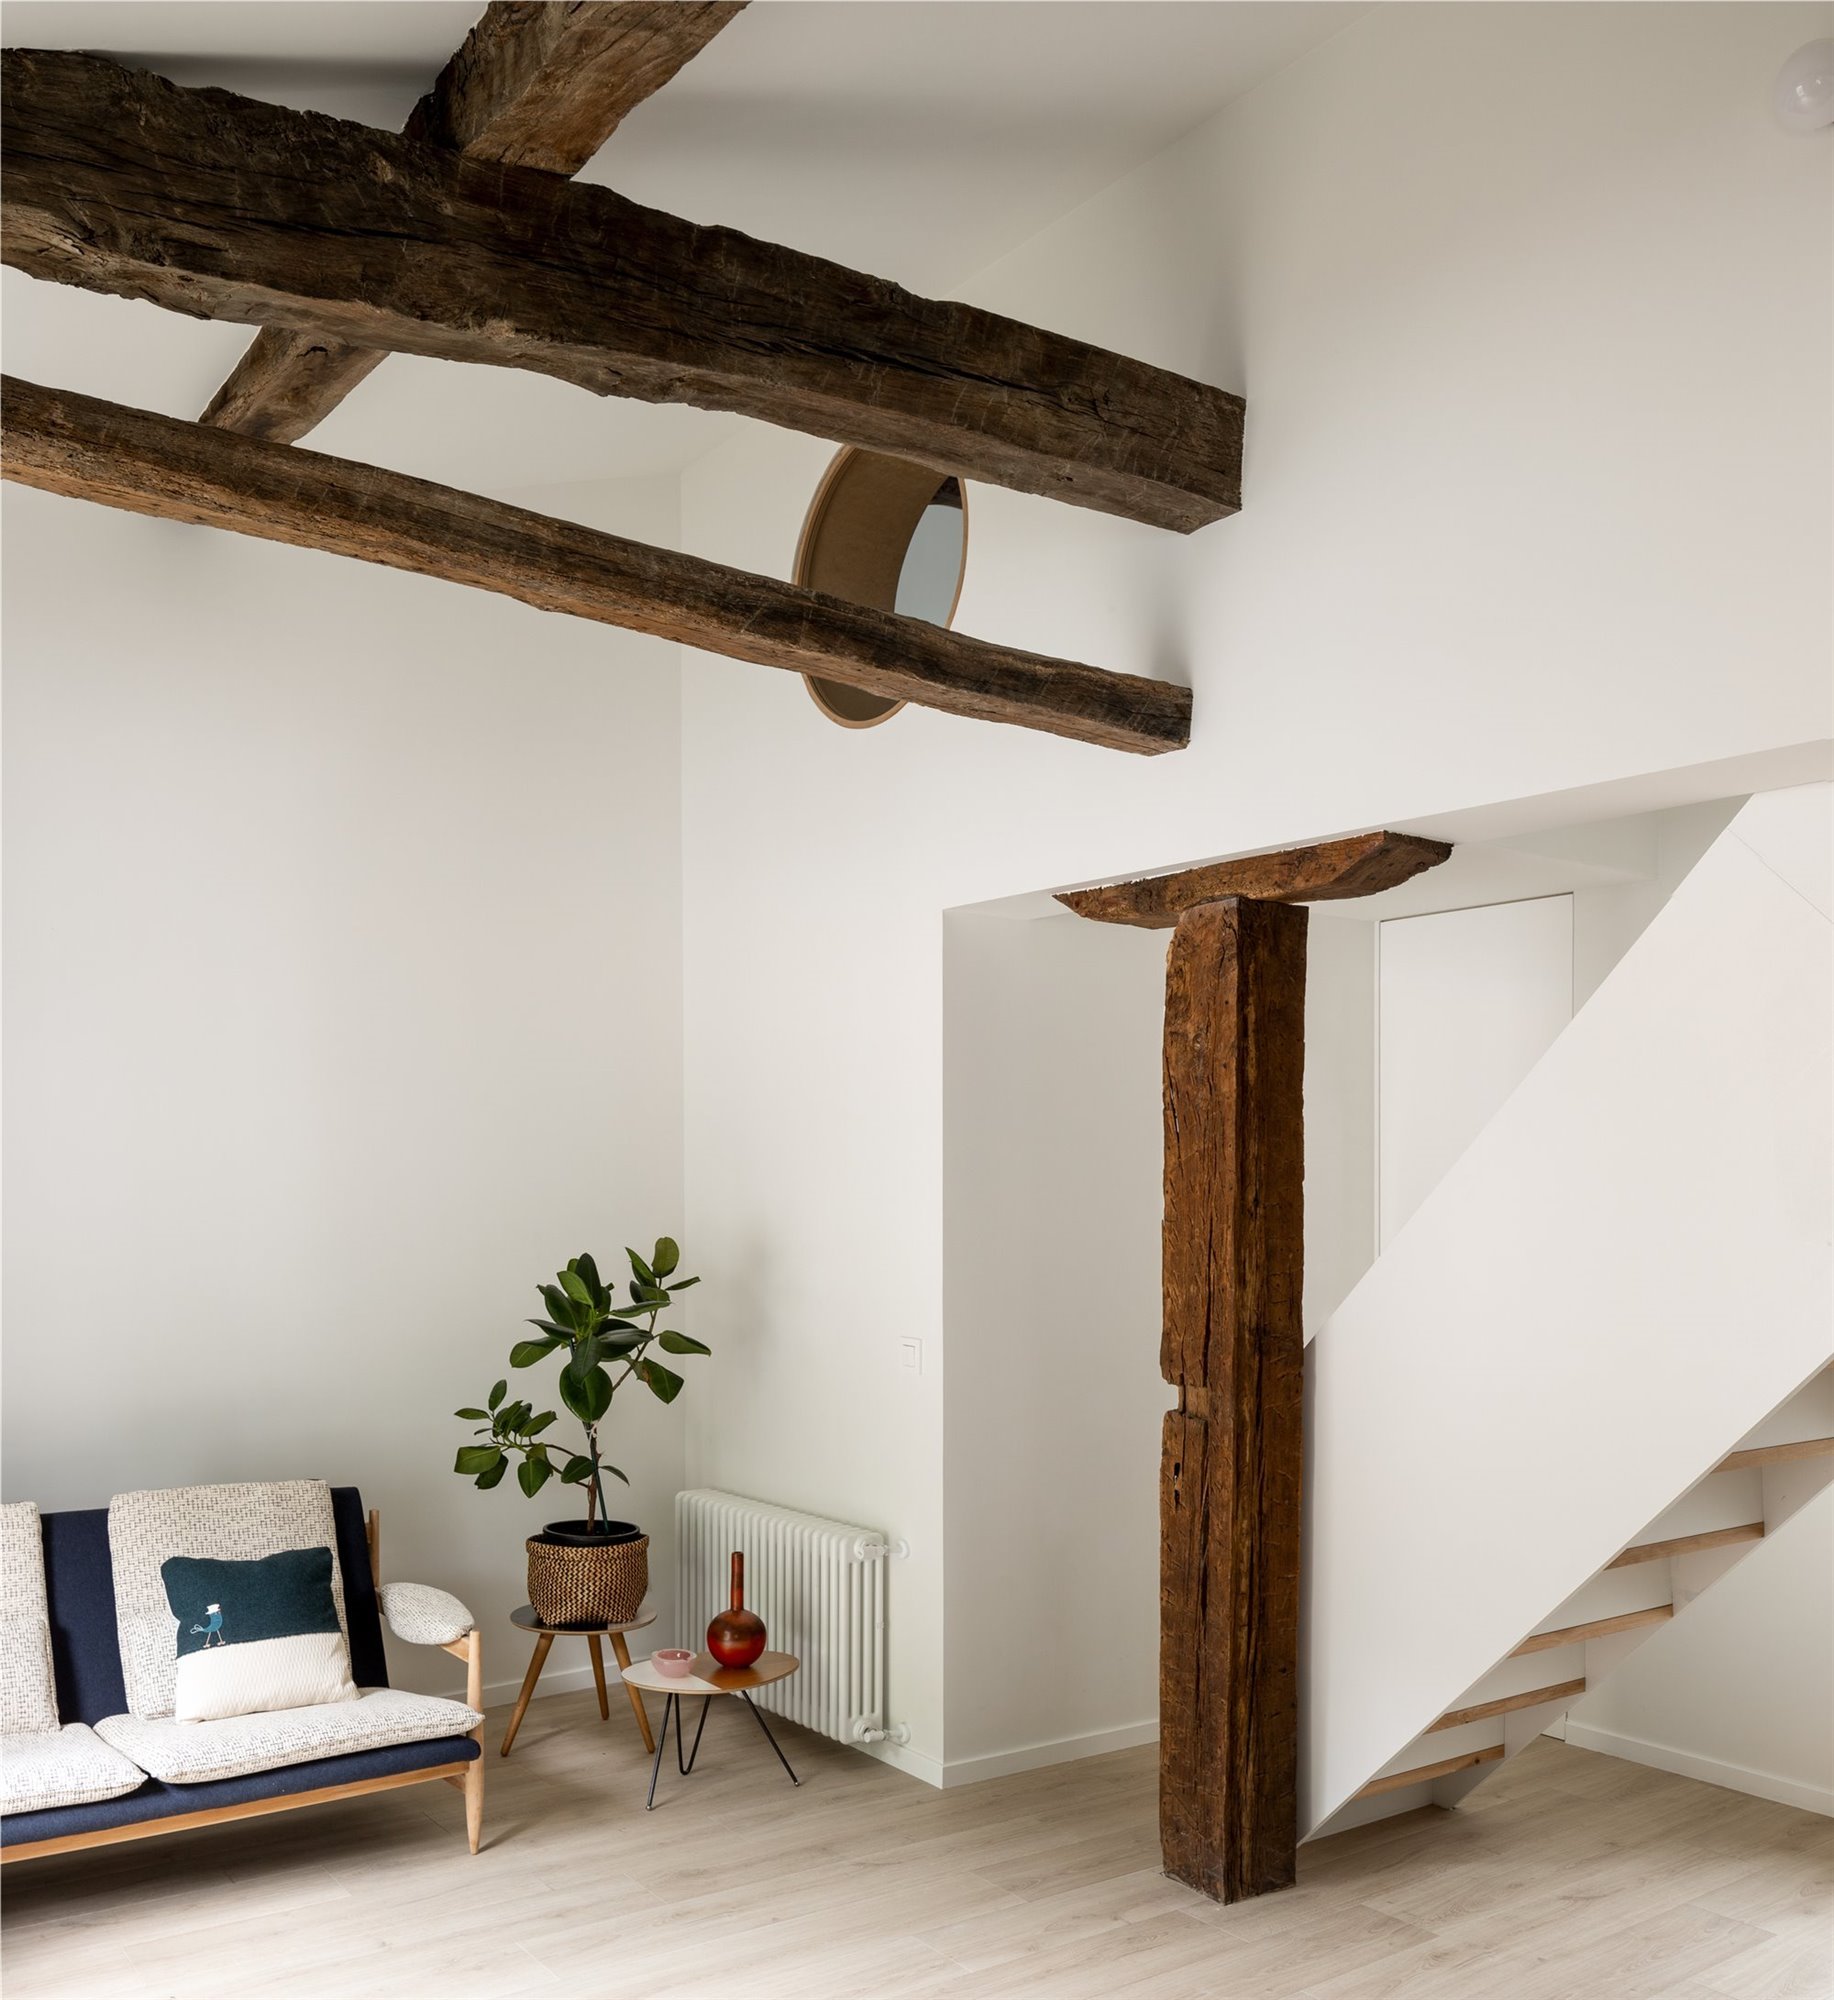 Salón con vigas de madera y estilo minimalista.